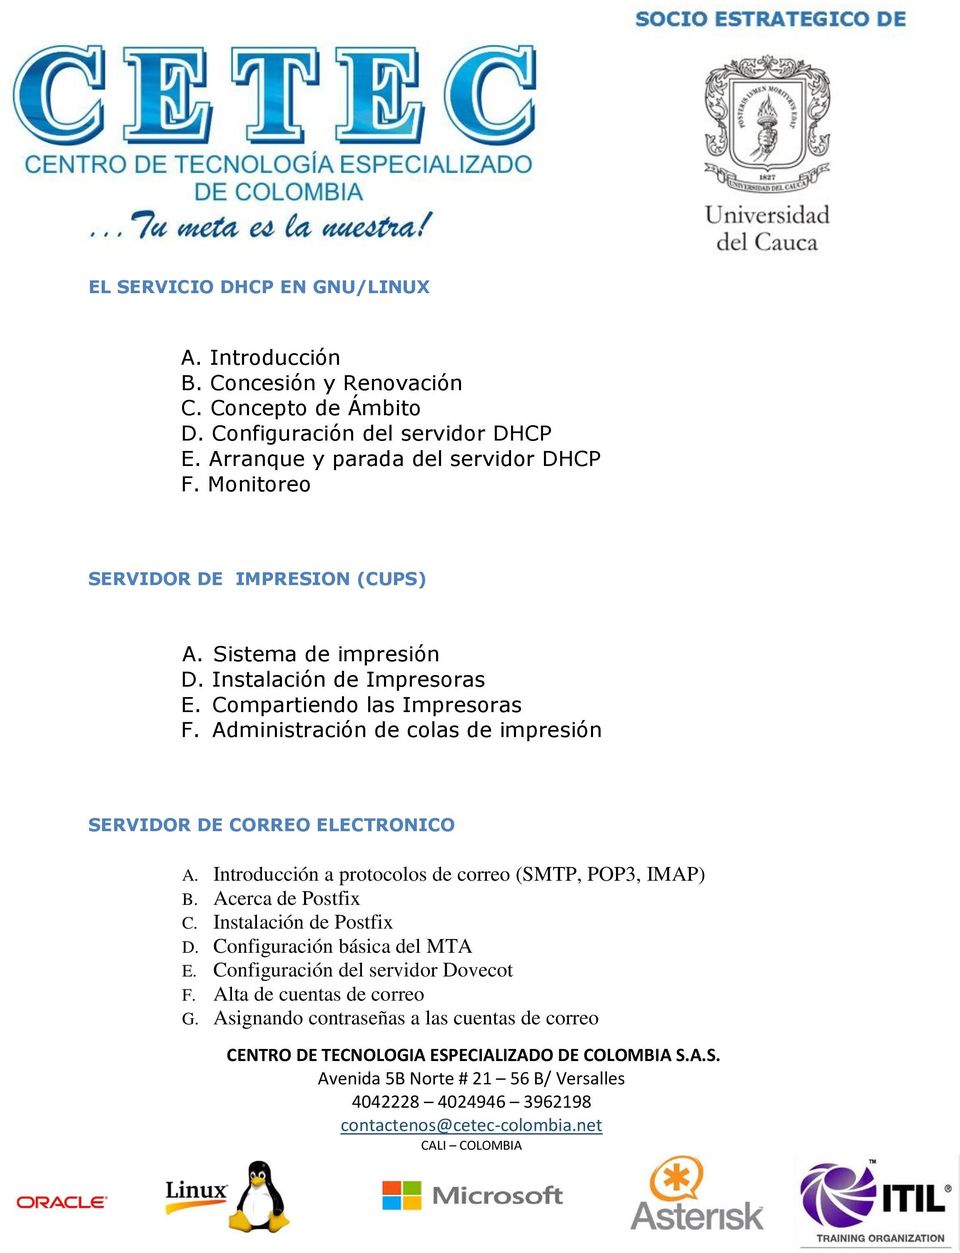 Compartiendo las Impresoras F. Administración de colas de impresión SERVIDOR DE CORREO ELECTRONICO A.